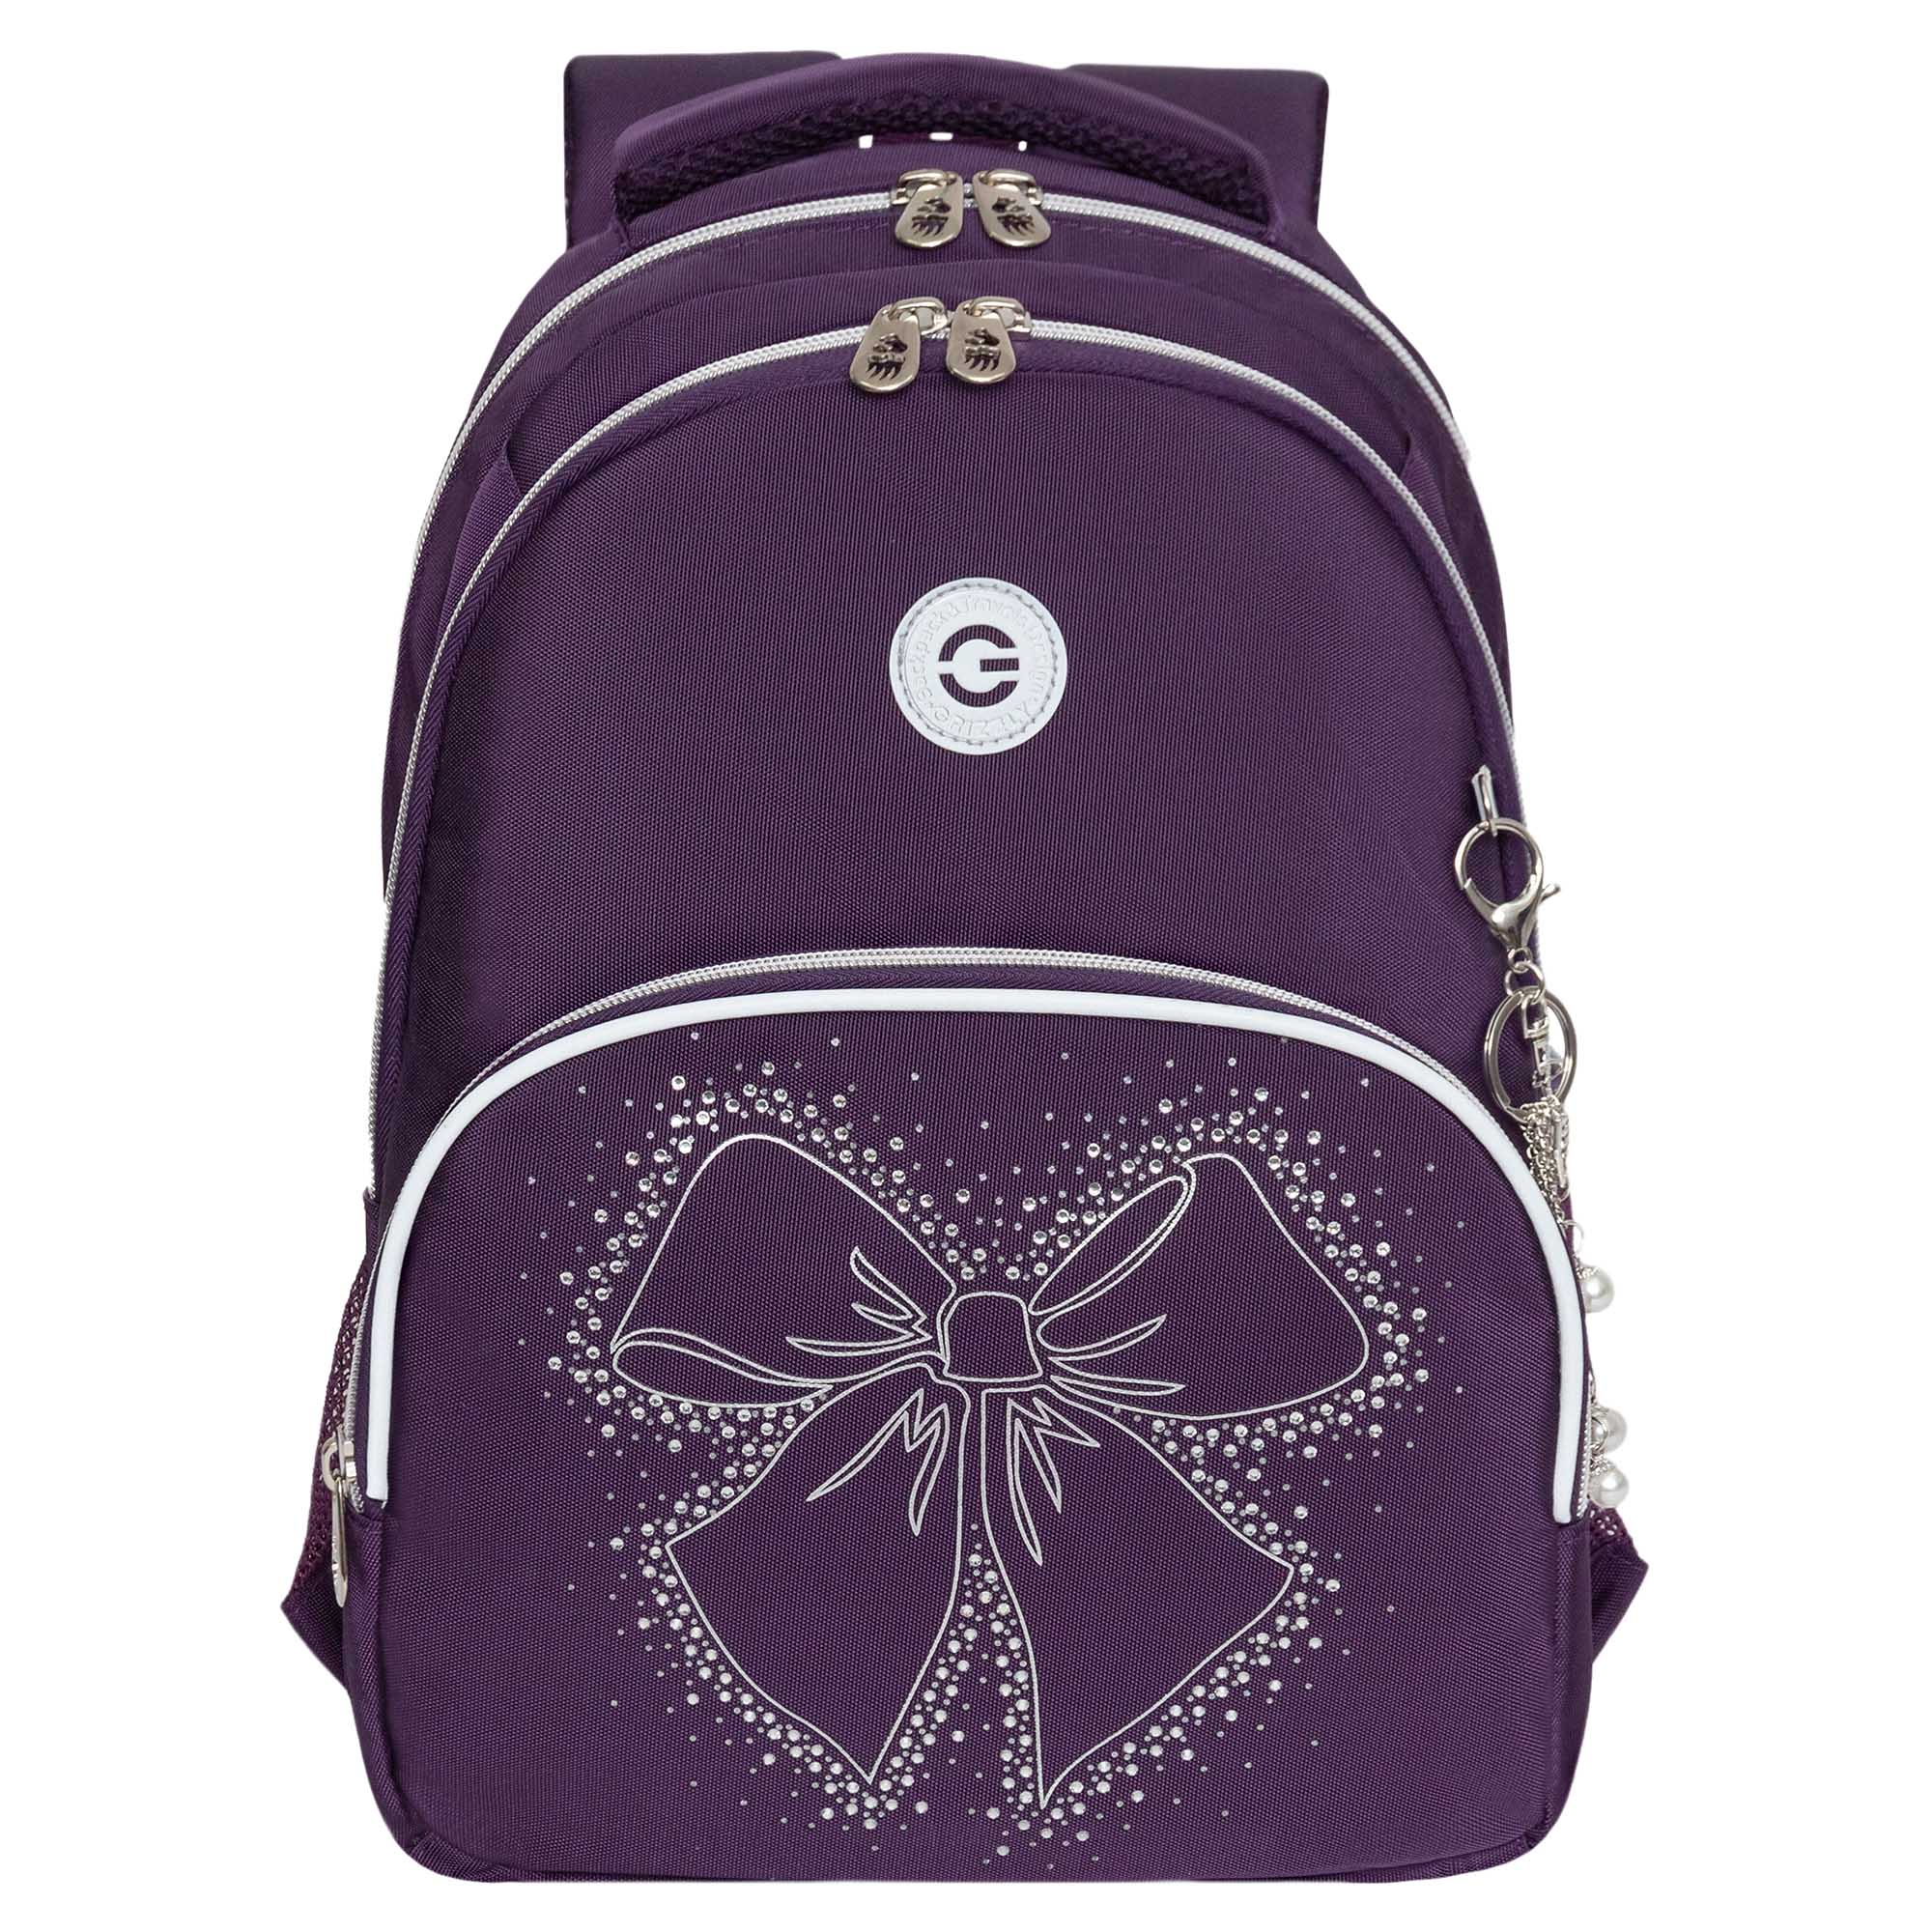 Рюкзак школьный GRIZZLY с карманом для ноутбука 13 анатомический фиолетовый RG-460-5, 3